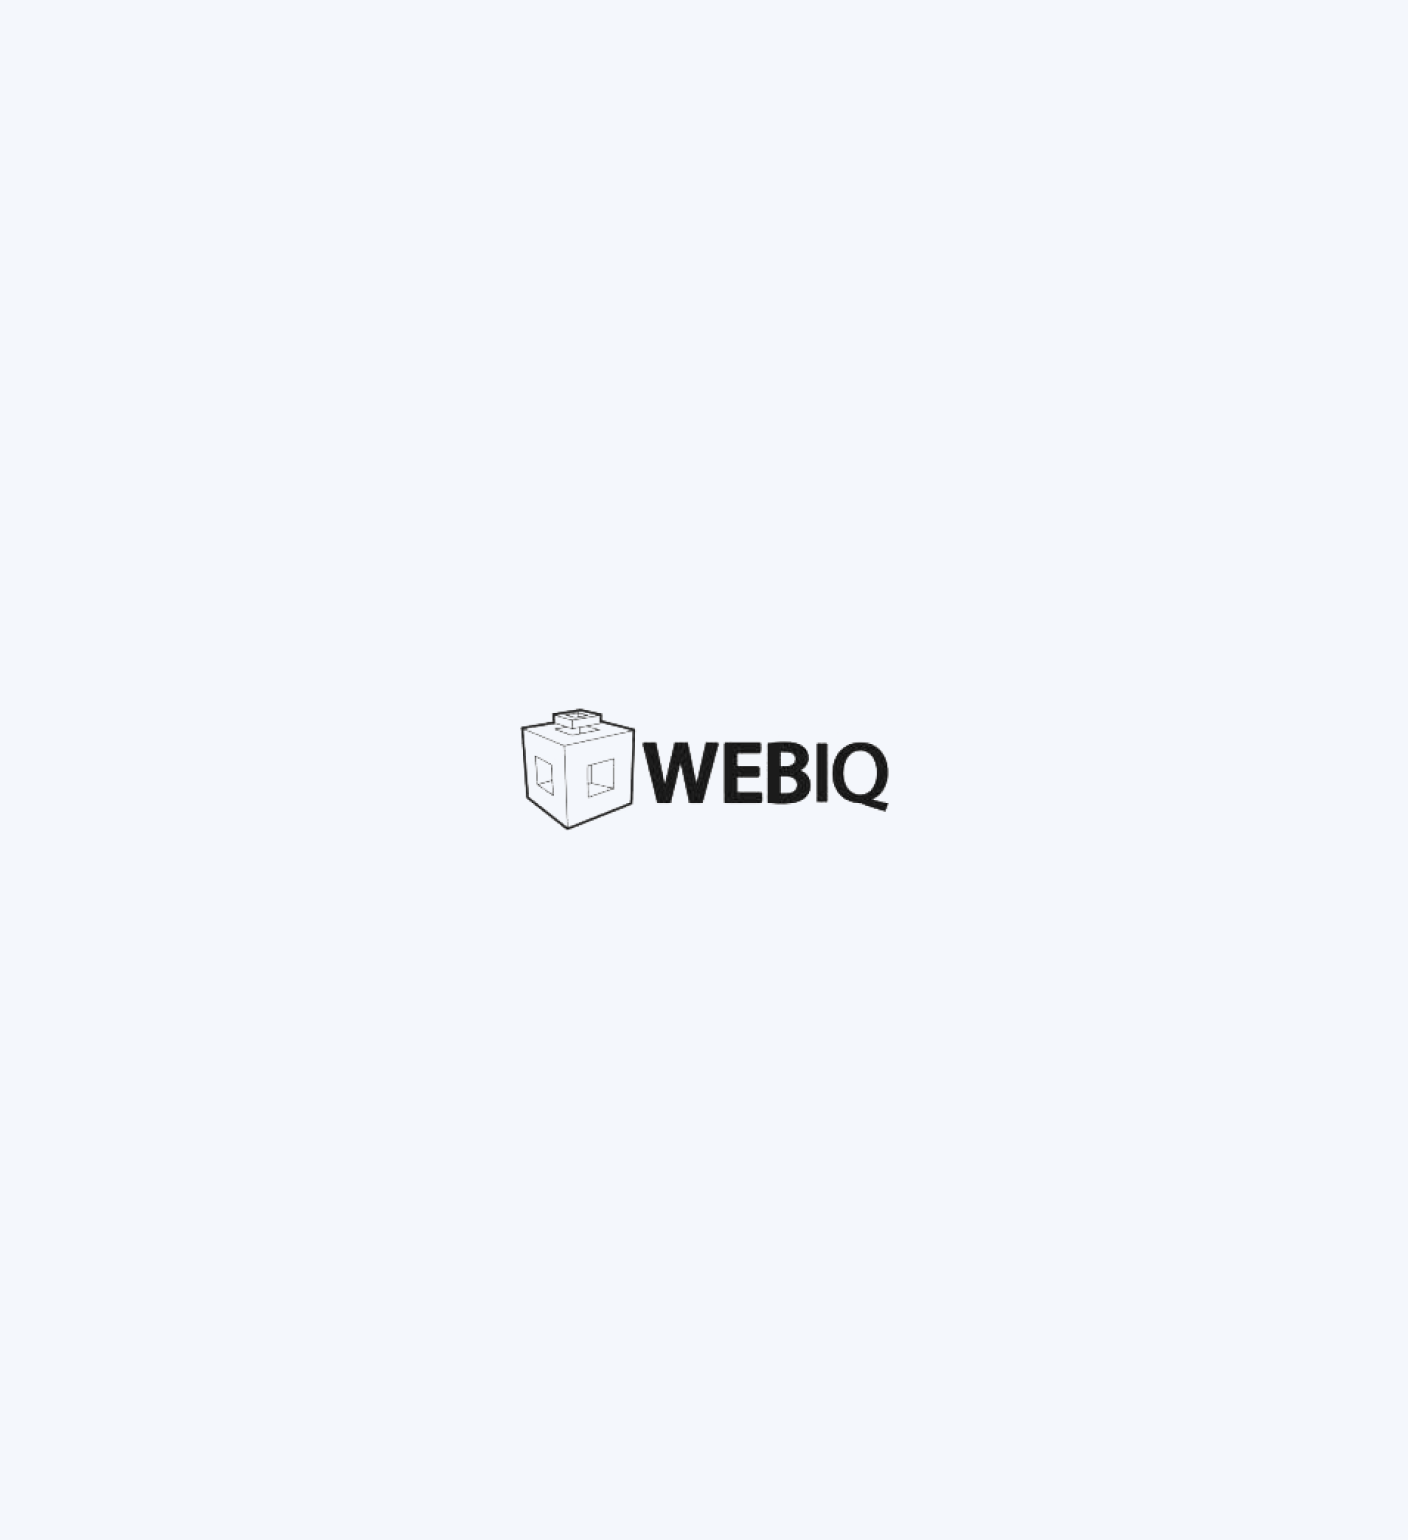 WebIQ-1